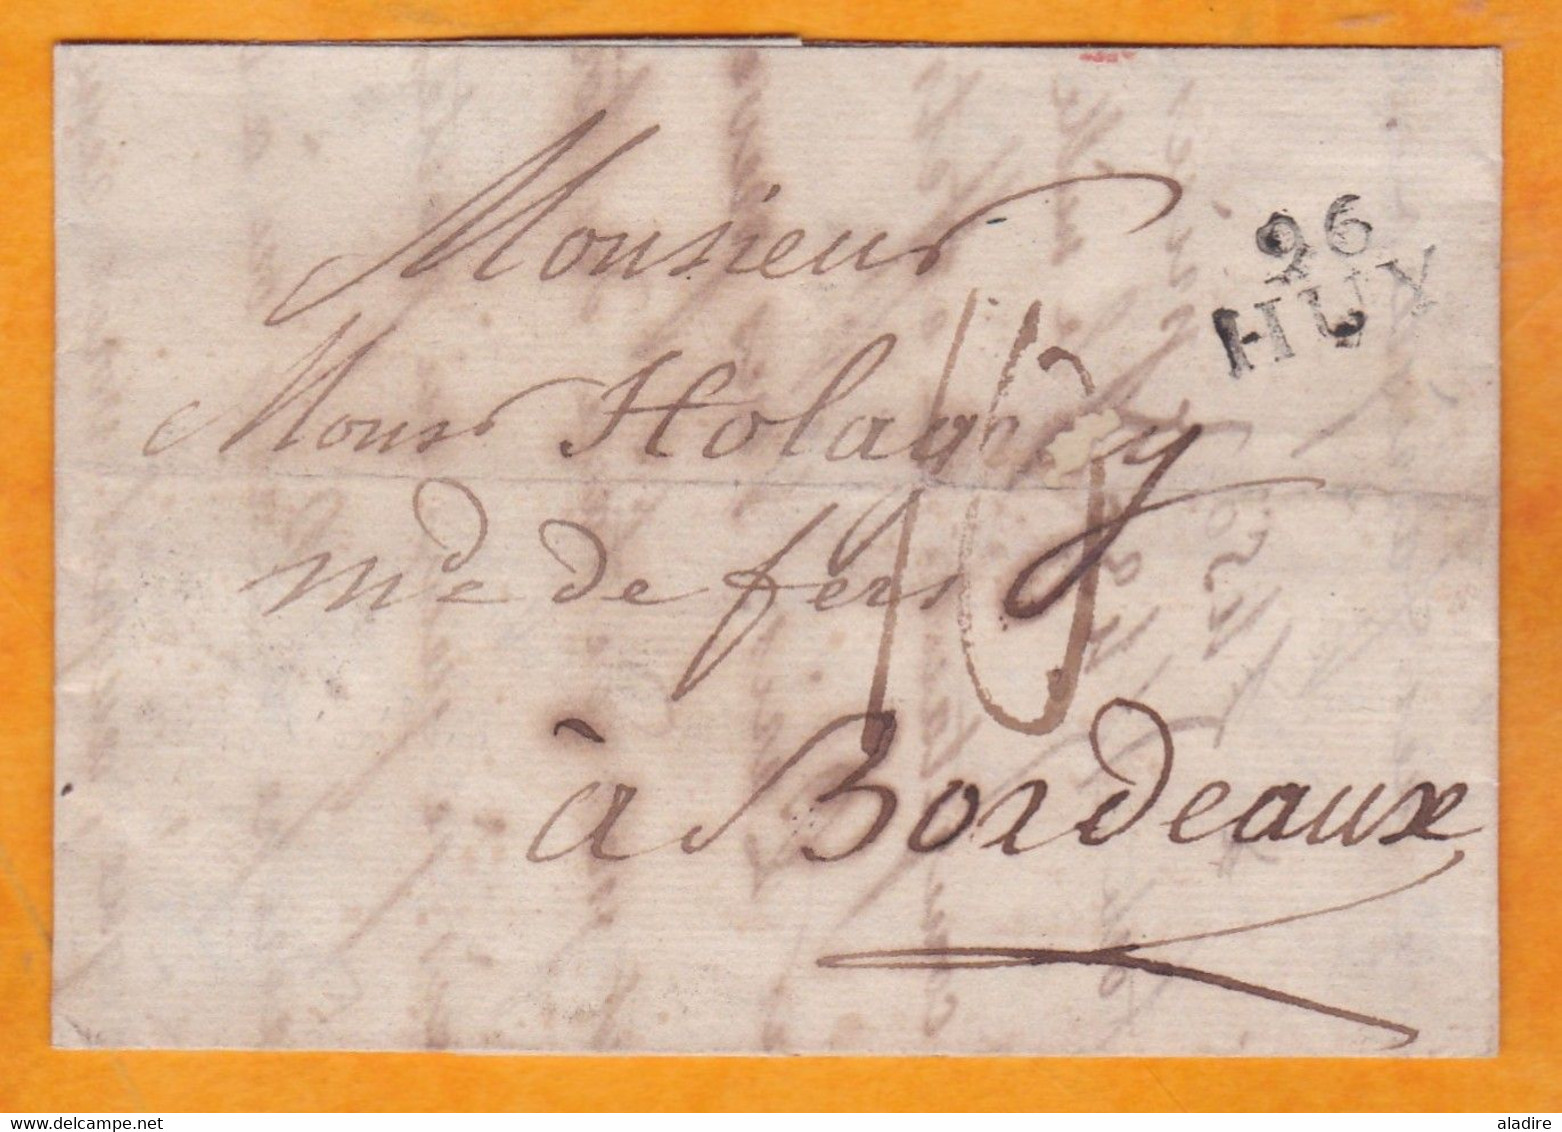 1810 Marque Postale 96 HUY, Auj.en Belgique, Départ Conquis De L'Ourthe, Vers Bordeaux - Holagray Marchand De Fers - 1792-1815 : Departamentos Conquistados